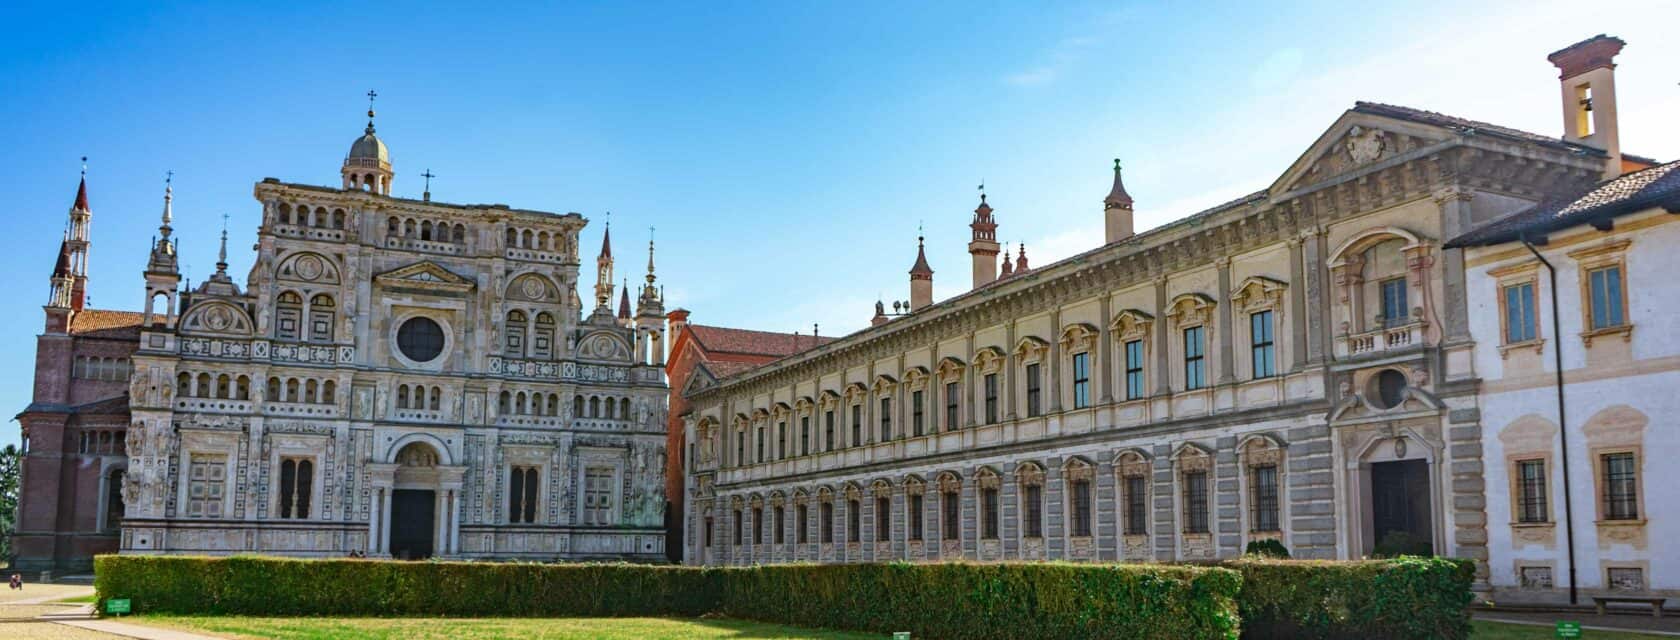 The Certosa di Pavia in Italy.